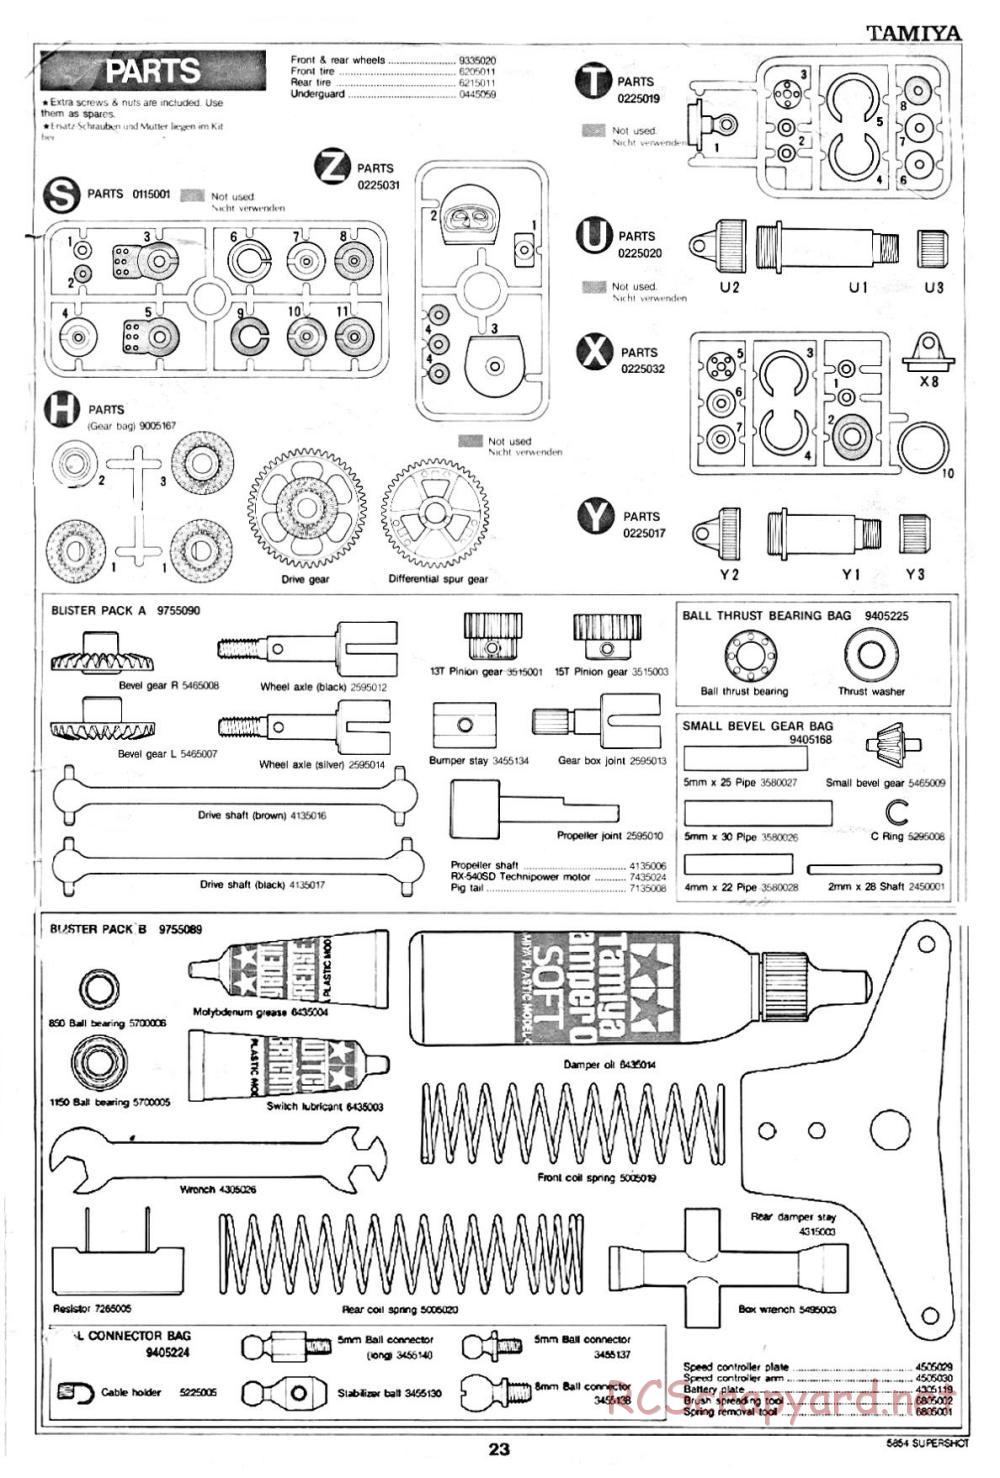 Tamiya - Supershot - 58054 - Manual - Page 23